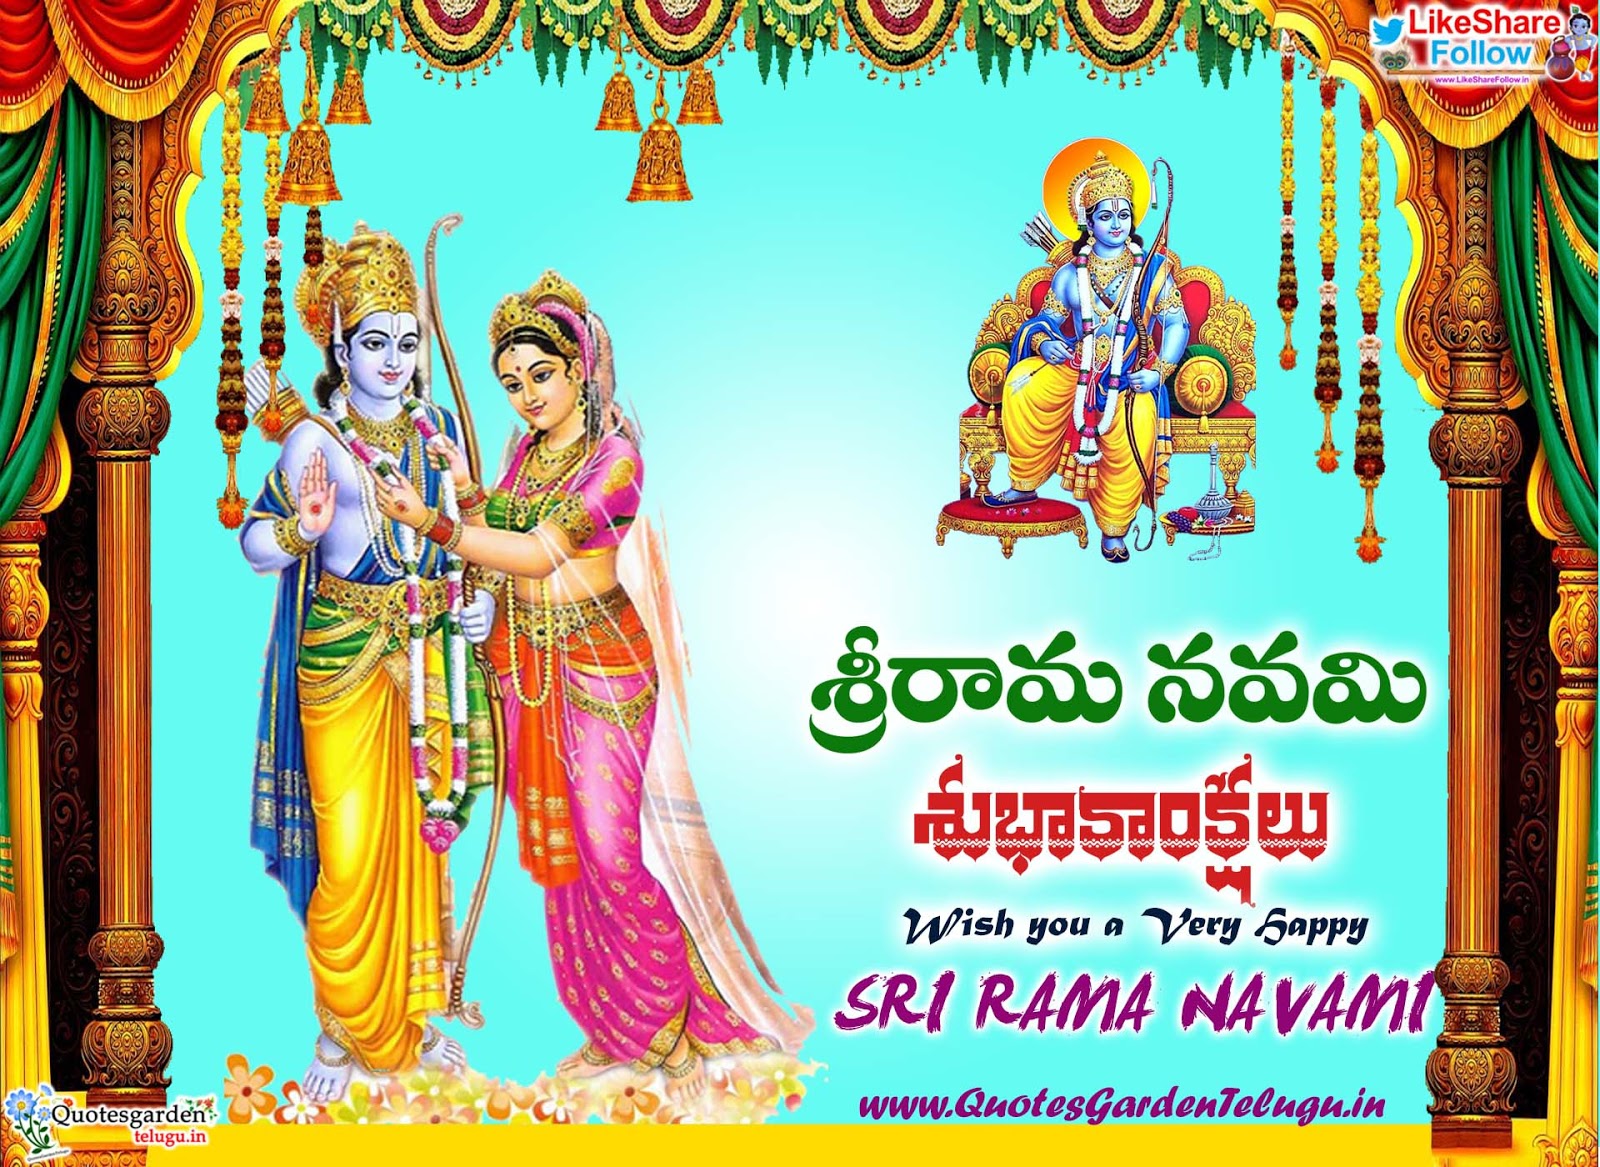 Sri Rama Navami wishes images 2019 | QUOTES GARDEN TELUGU | Telugu ...